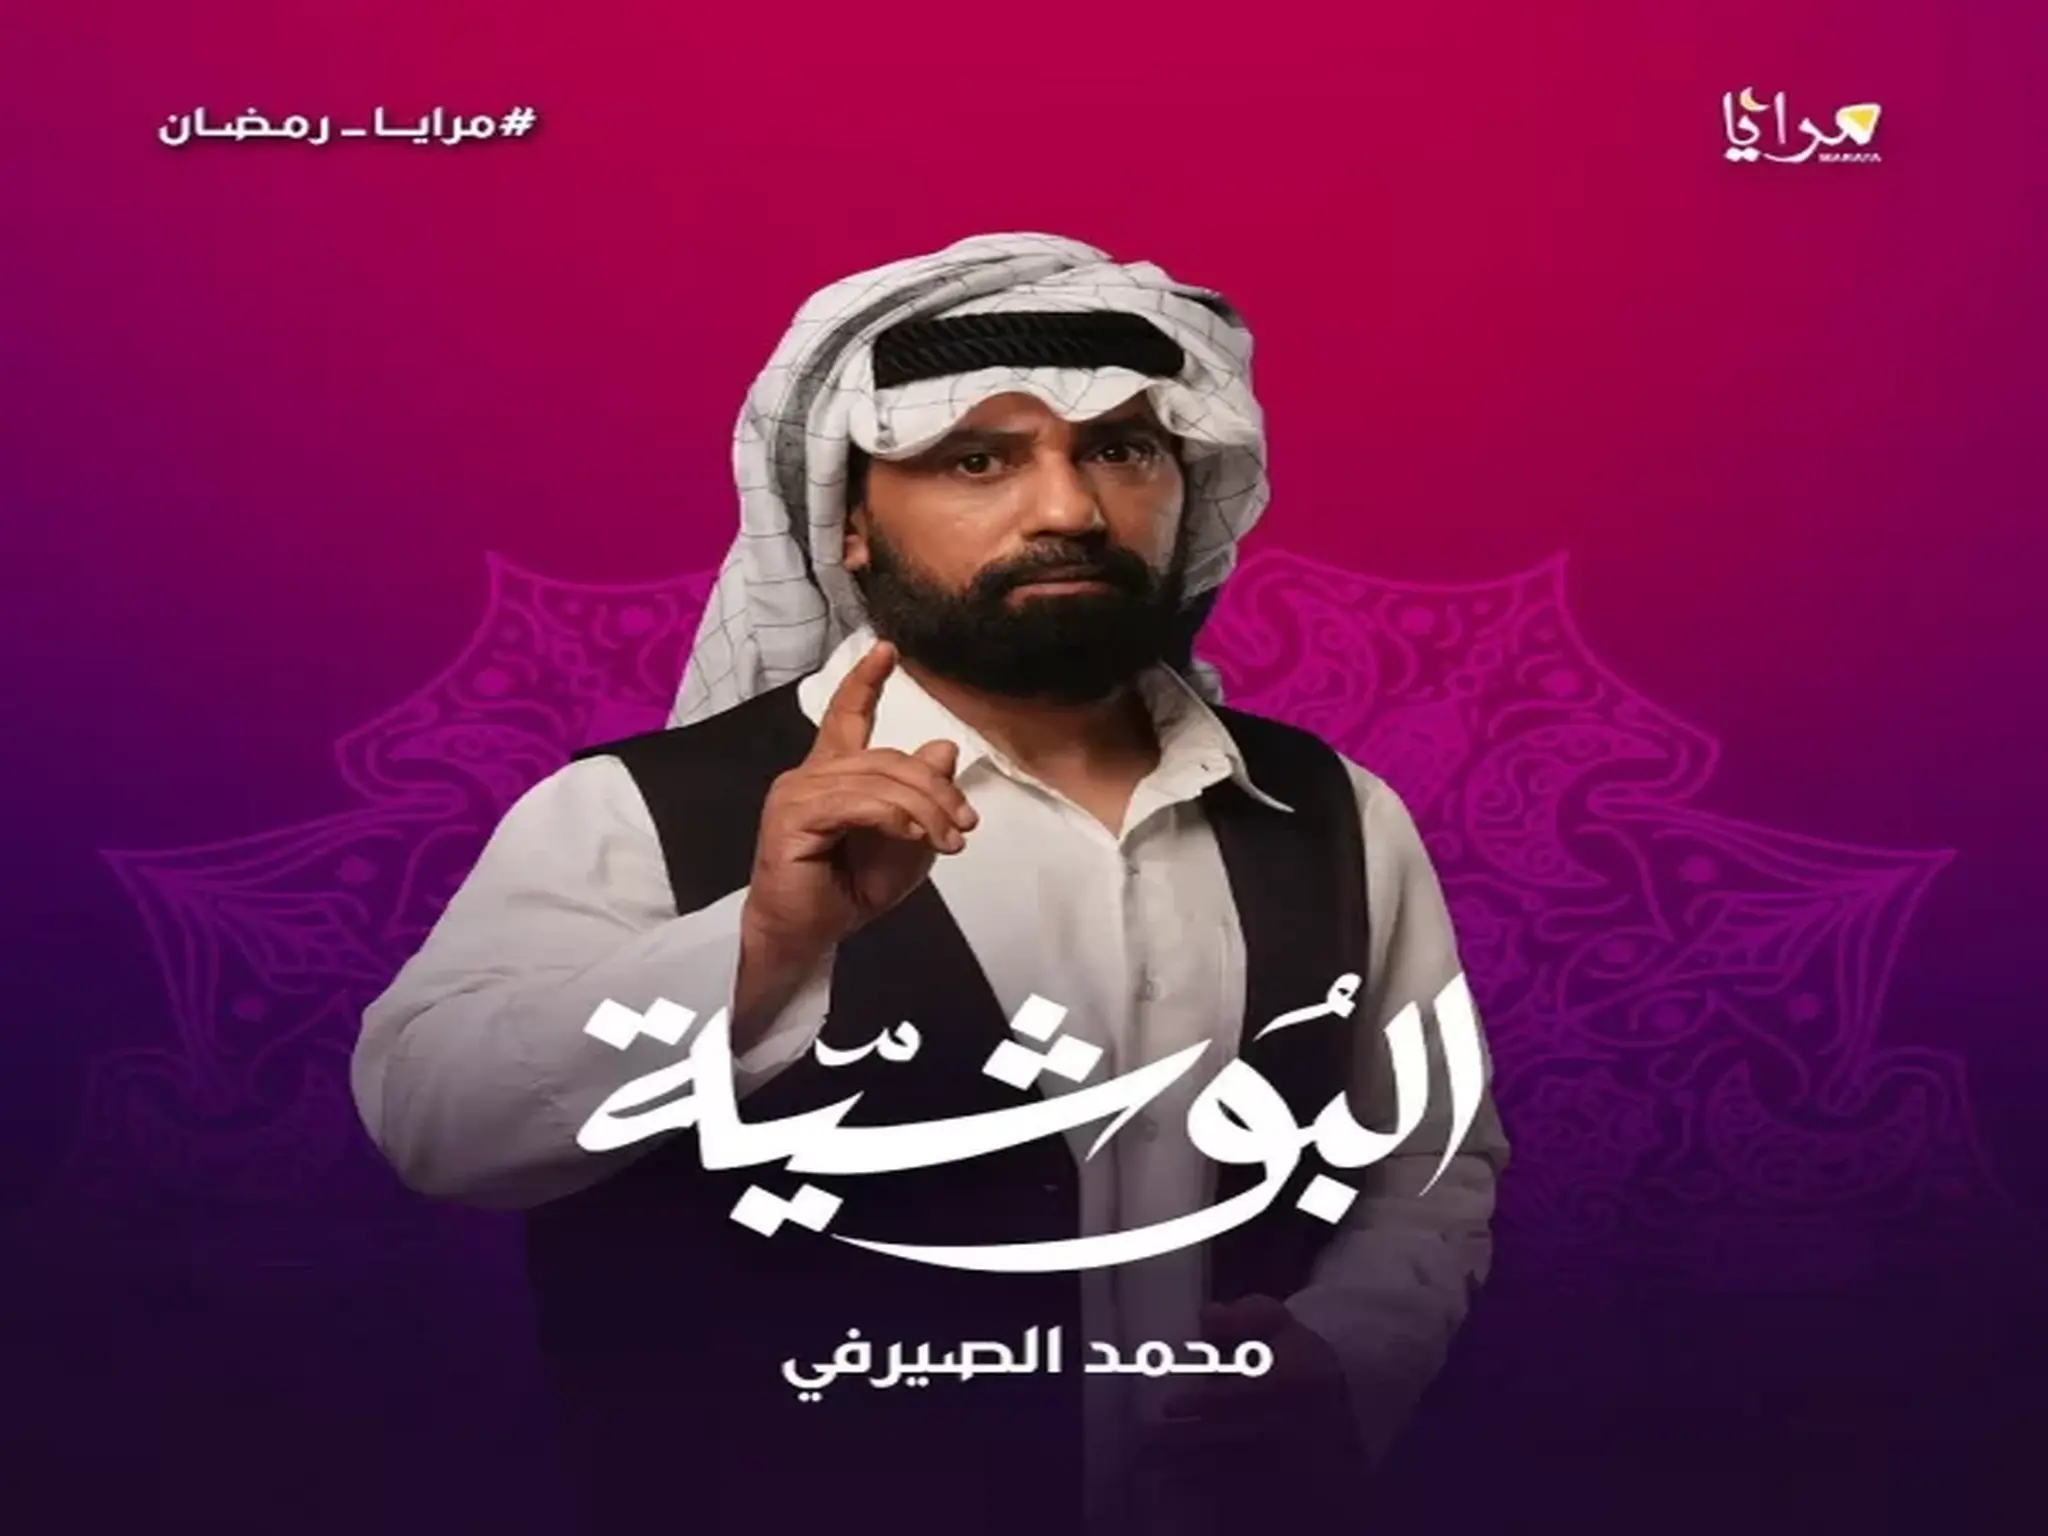 مواعيد عرض مسلسل "البوشيه" رمضان 2023 والقنوات الناقلة له